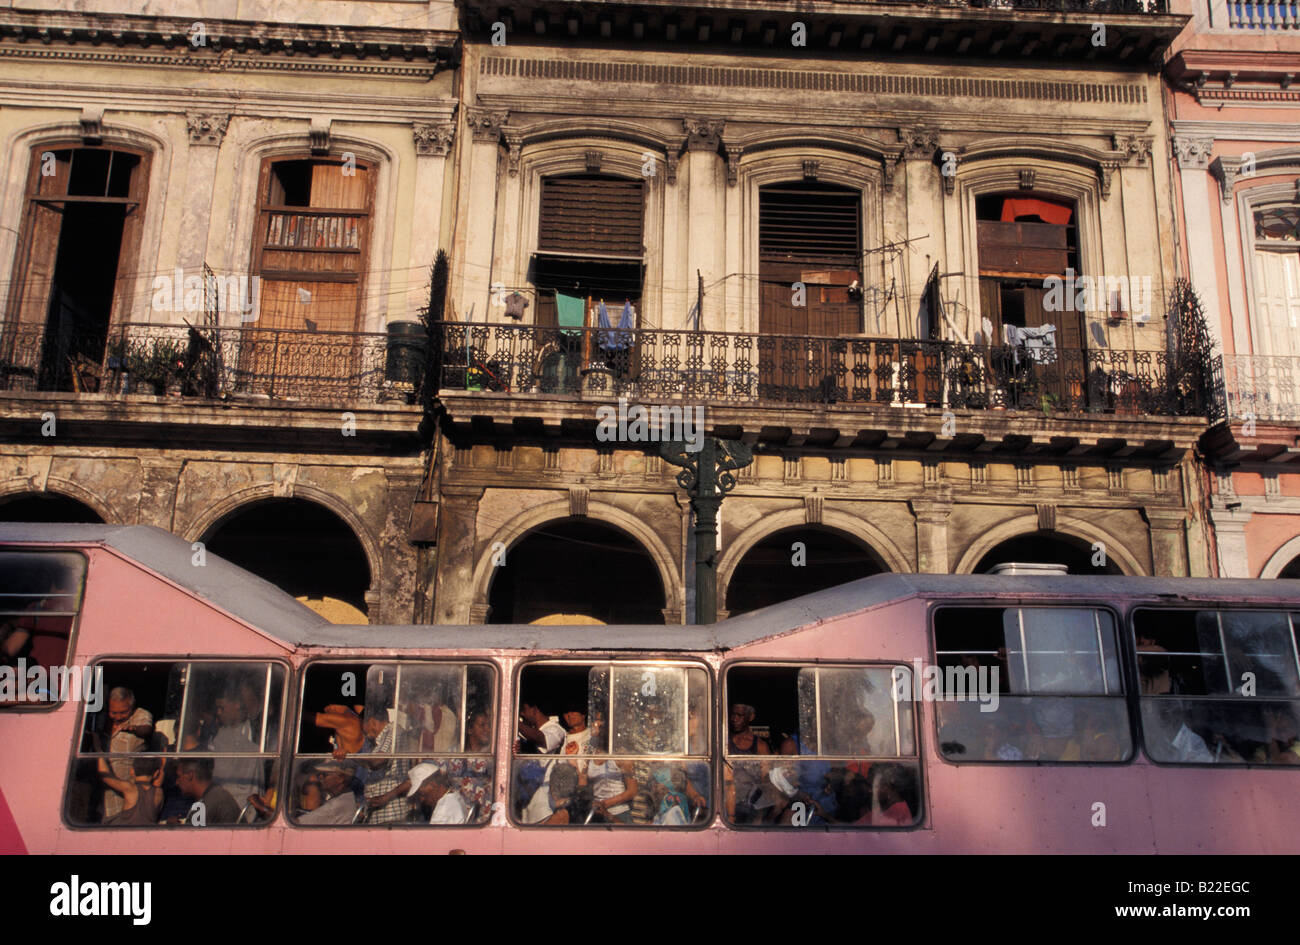 Lokale Kamel Bus Havanna Kuba Karibik Stockfoto